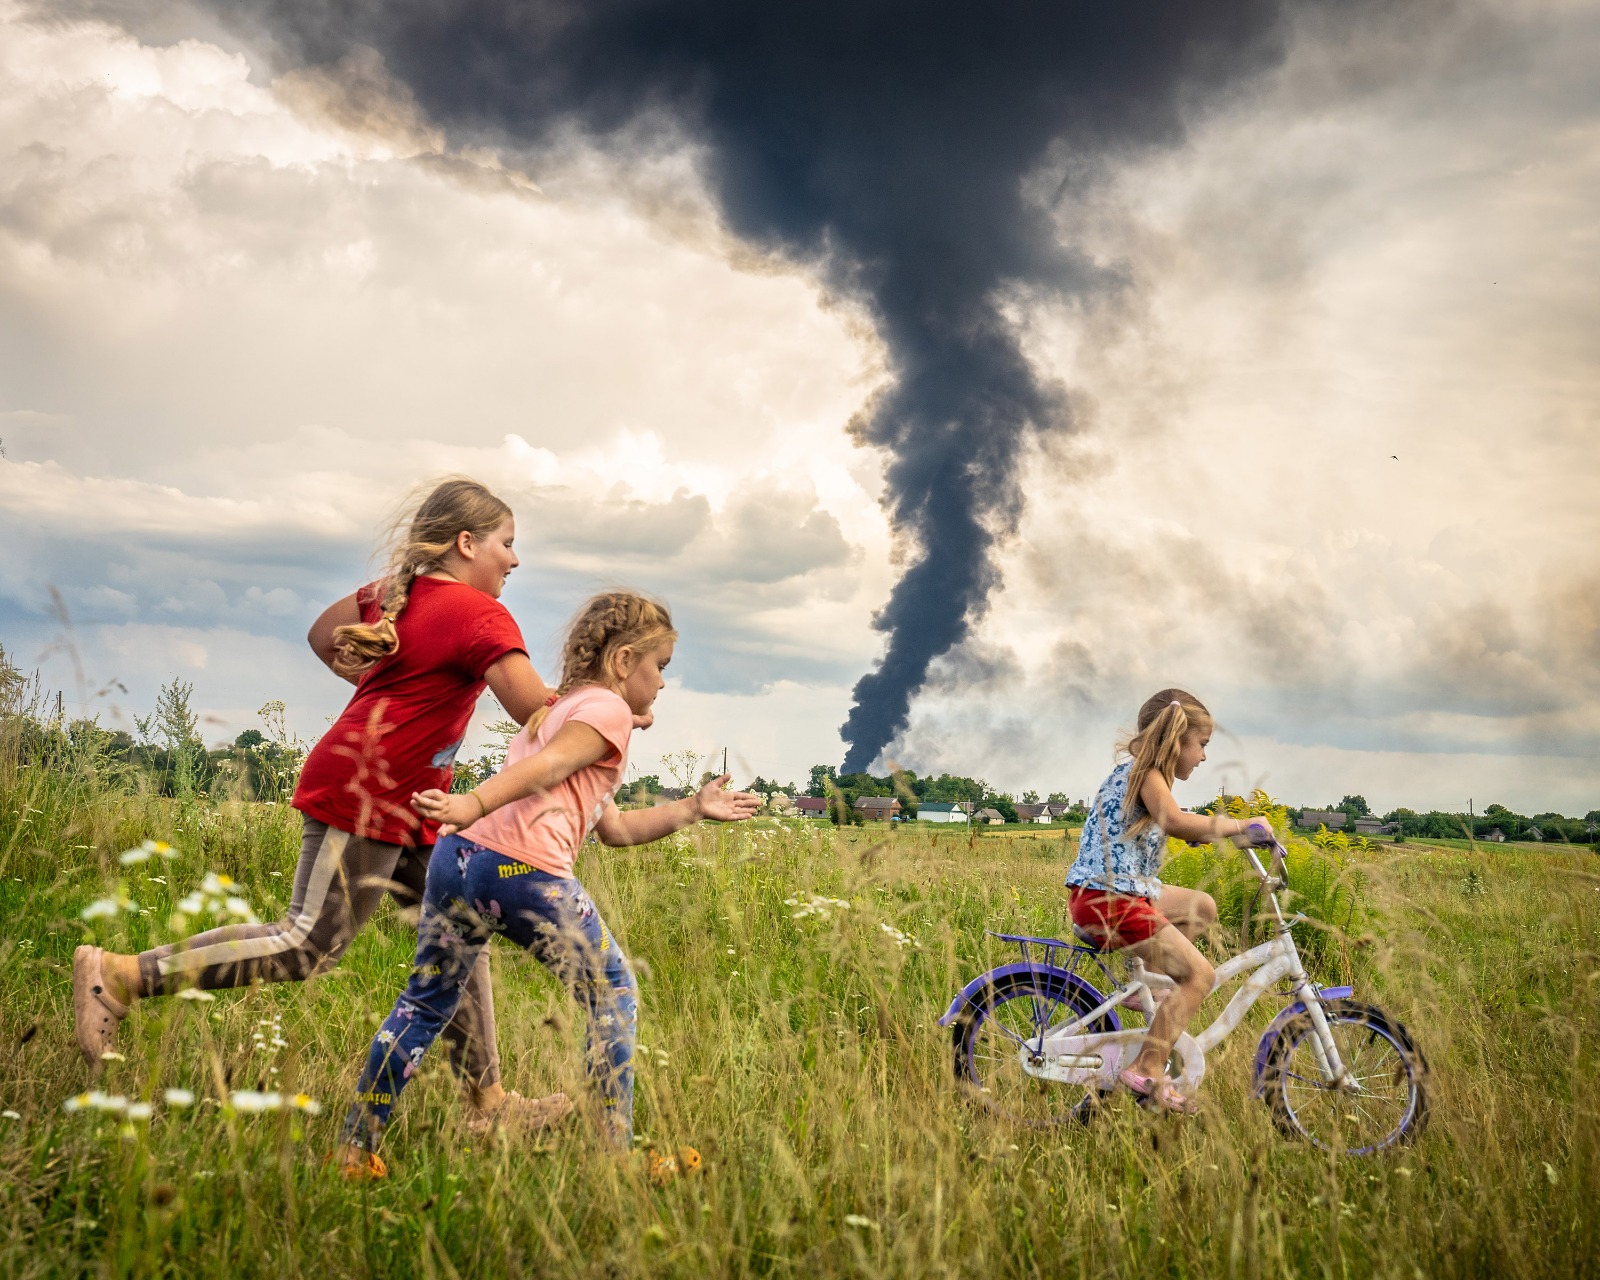 Una imagen de una niña en bicicleta junto a dos amigas en un prado en el noroeste de Ucrania, en "un momento de despreocupación bajo las oscuras nubes de la guerra", es la ganadora del concurso internacional en el que el Fondo de las Naciones Unidas para la Infancia (UNICEF) en Alemania elige la mejor foto del año. EFE/ Patryk Jaracz/UNICEF SOLO USO EDITORIAL/SOLO DISPONIBLE PARA ILUSTRAR LA NOTICIA QUE ACOMPAÑA (CRÉDITO OBLIGATORIO)